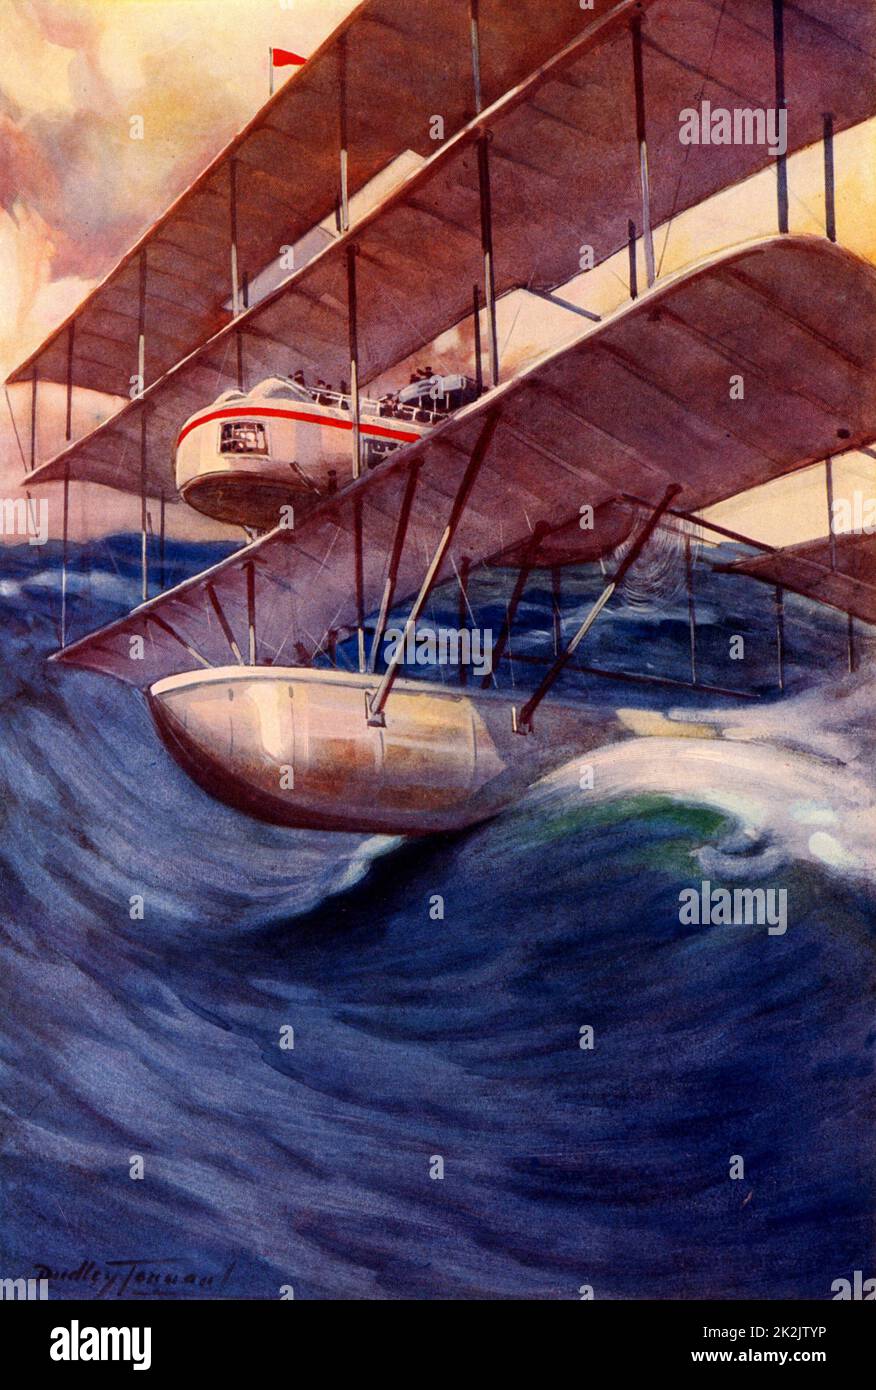 Le Air-Liner du futur, 1914. L'idée d'un avion de ligne transatlantique qui survolerait à 10 000 ans, mais en cas d'urgence, pourrait descendre au niveau de la mer et effleurer la surface. On s'attendait à ce que le vol entre Londres et New York prenne moins de 24 heures. Illustration par C Dudley Tennant (actif 1898-1918). Demi-ton. Banque D'Images